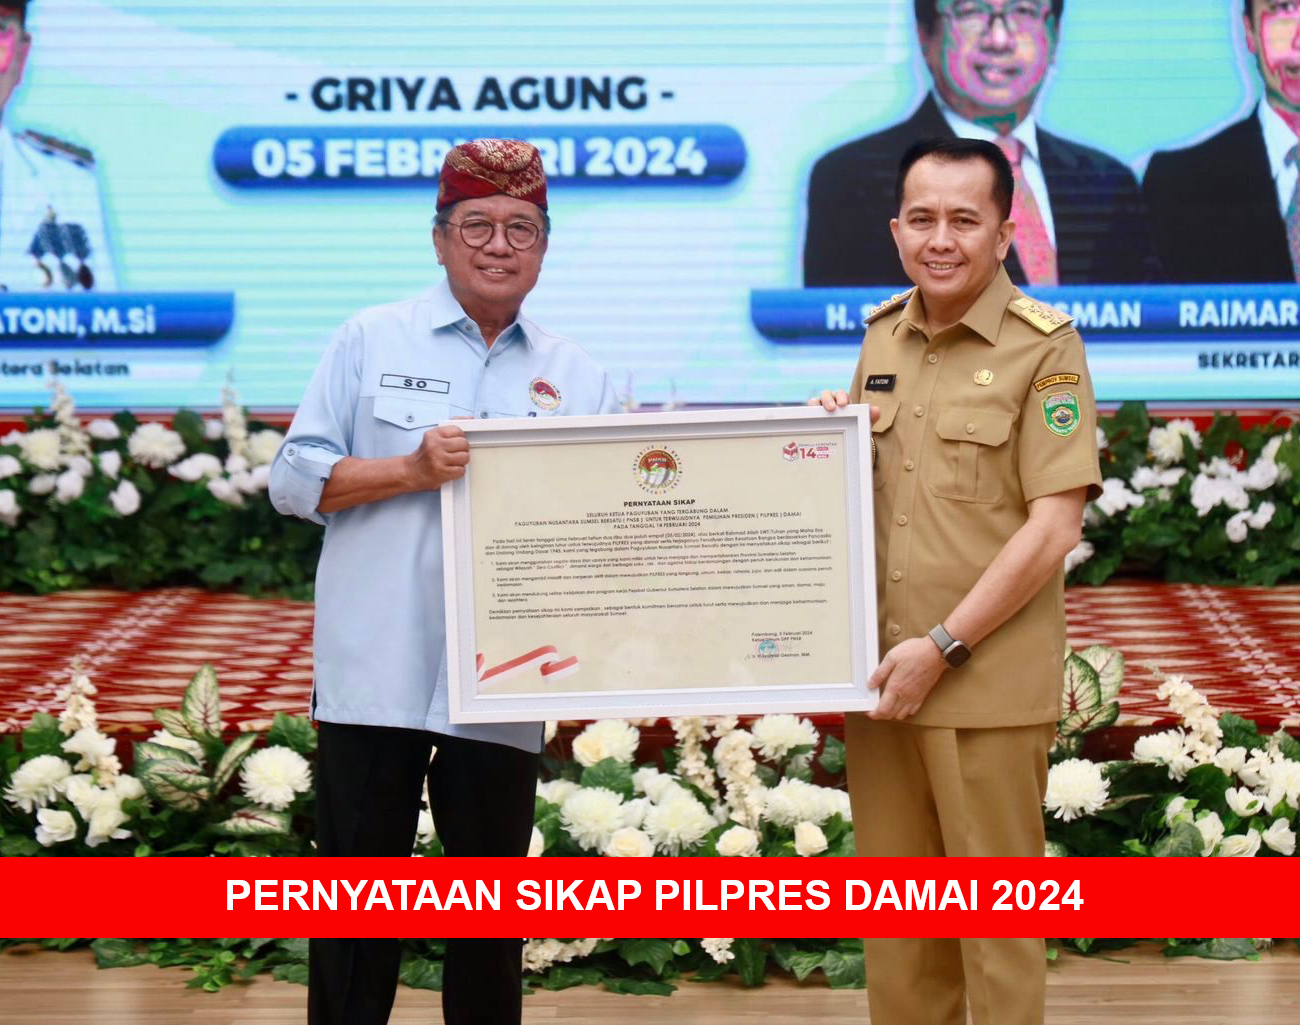 Pj Gubernur Apresiasi Pernyataan Sikap Pilpres Damai 2024 dari Persaudaraan Nusantara Sumsel Bersatu